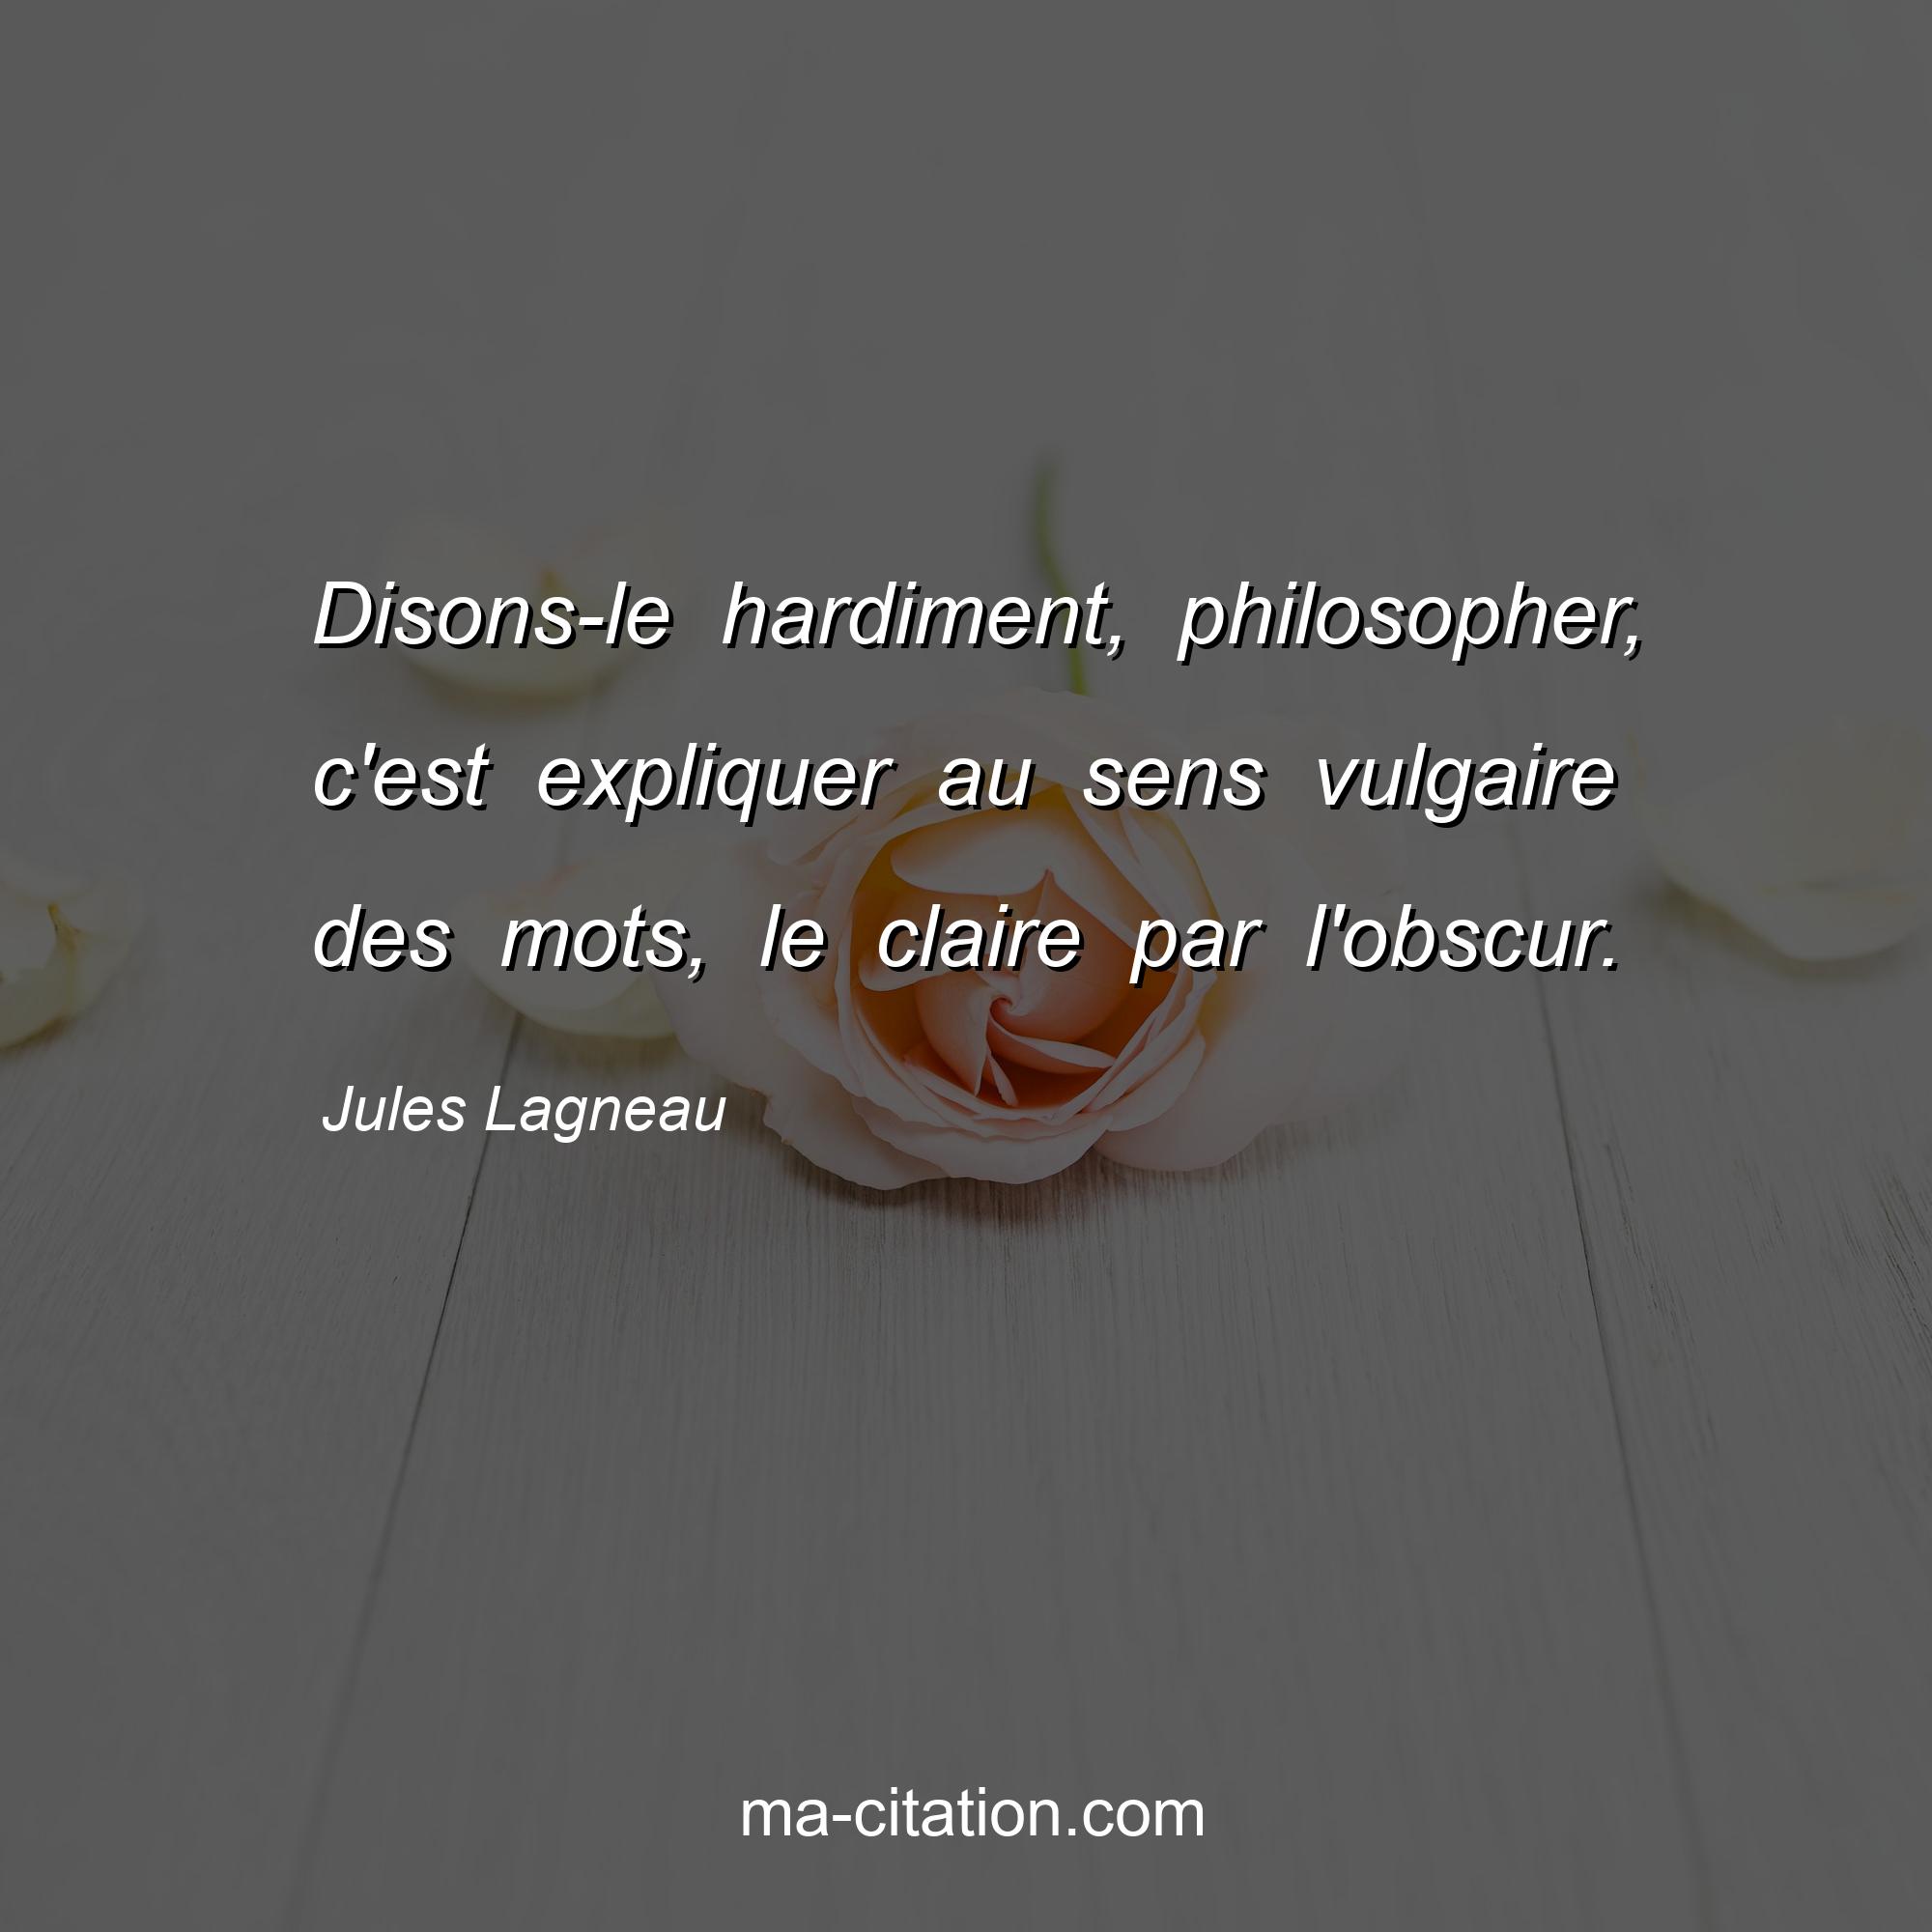 Jules Lagneau : Disons-le hardiment, philosopher, c'est expliquer au sens vulgaire des mots, le claire par l'obscur.